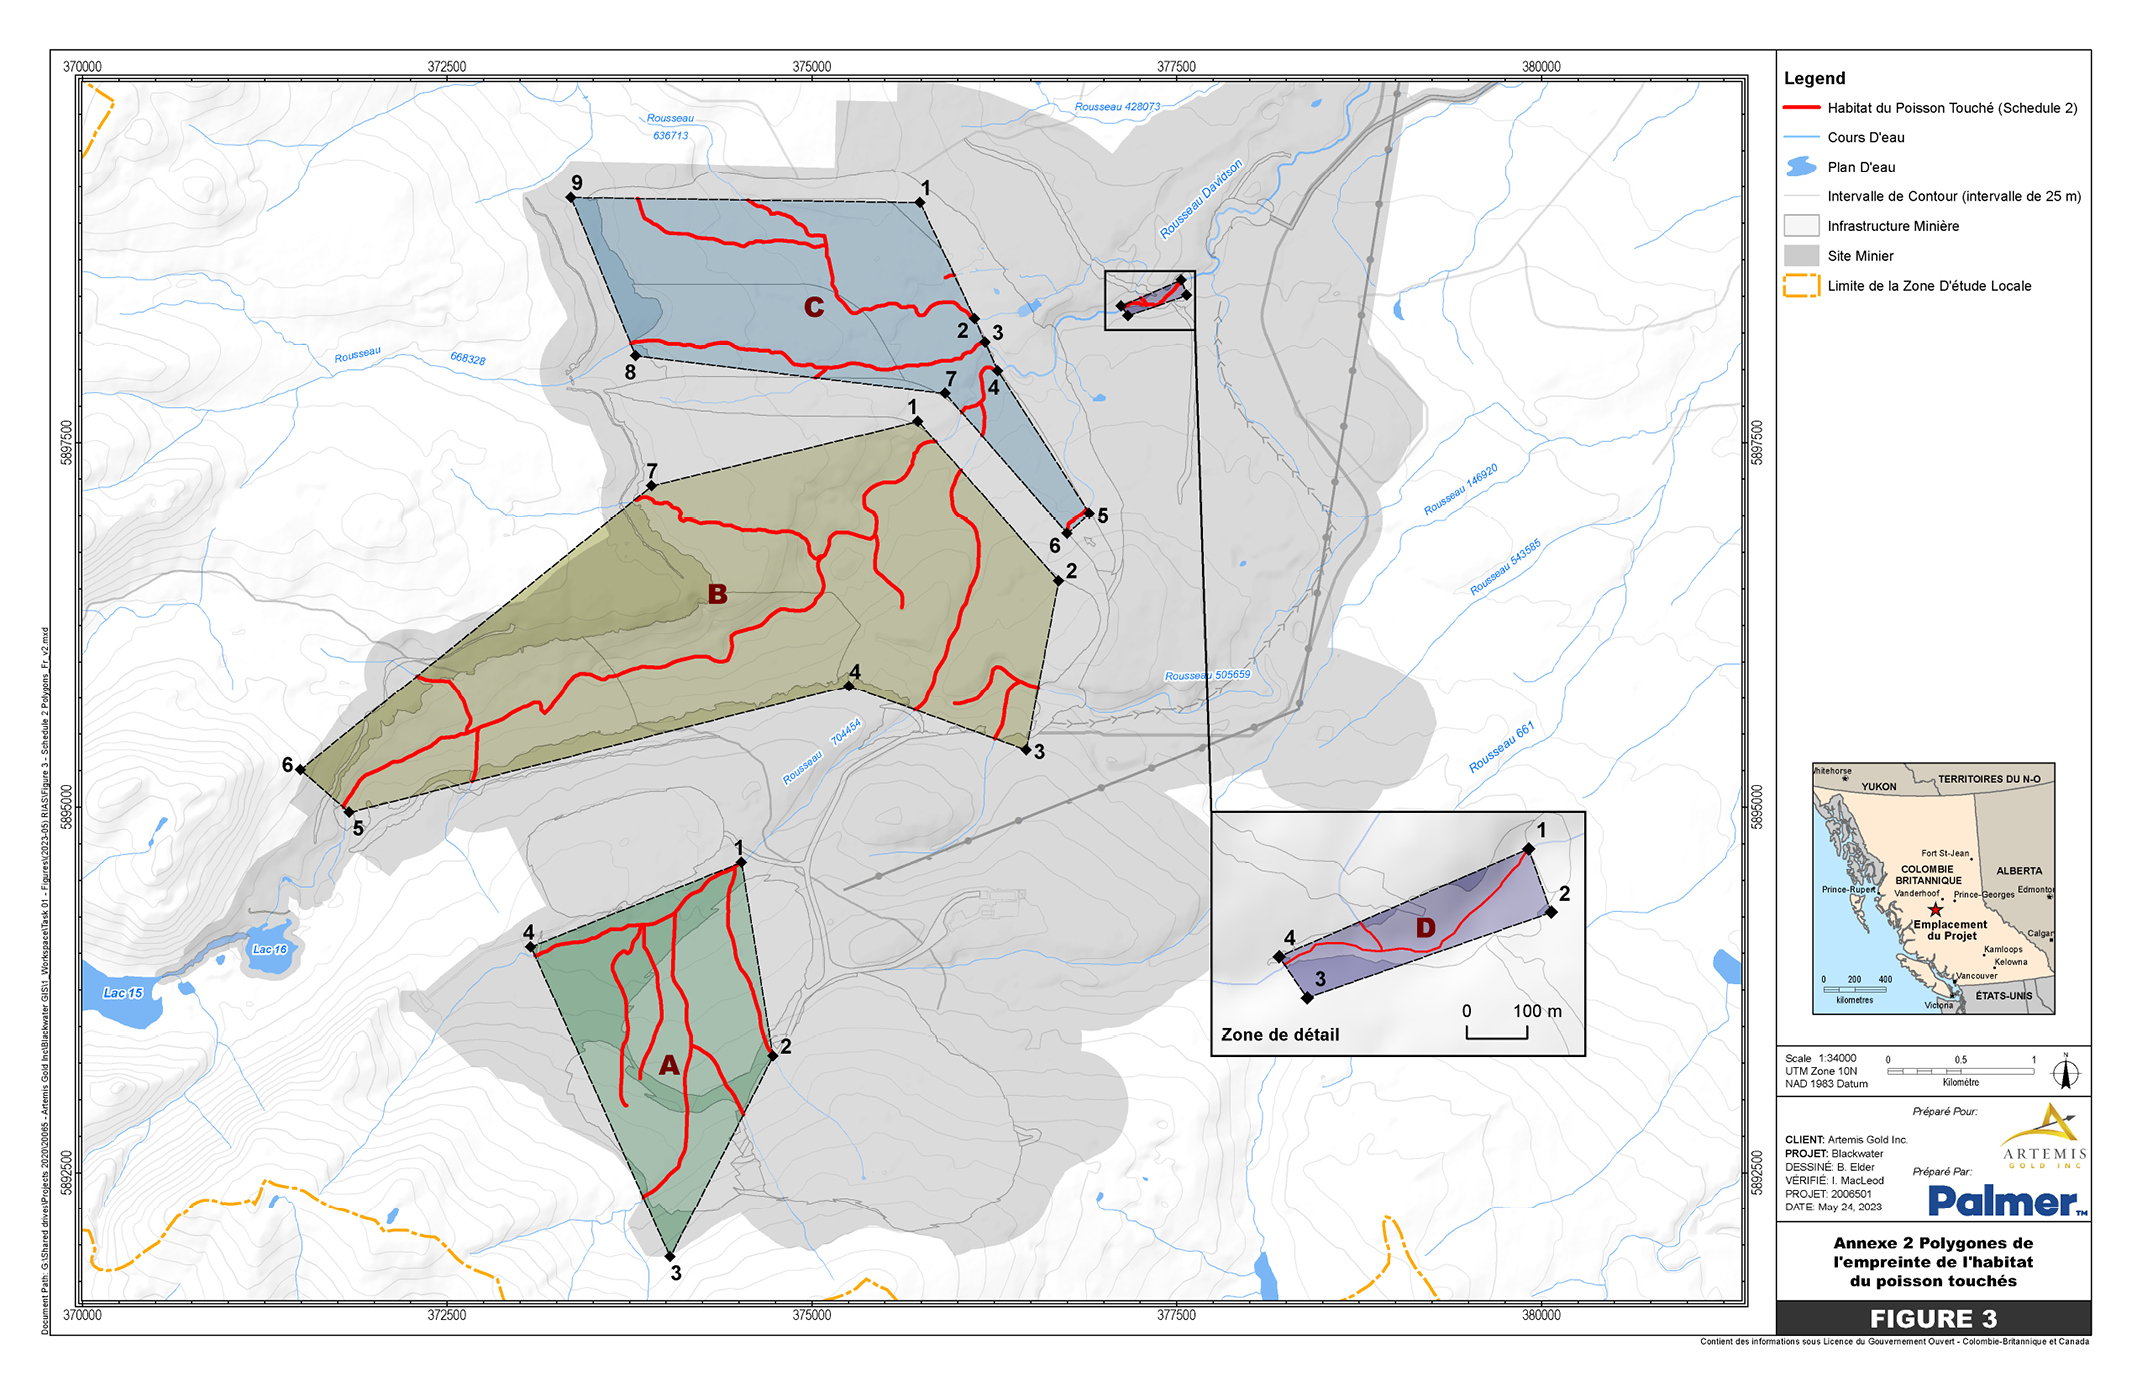 Carte à l’échelle 1/34 000 du site minier en Colombie-Britannique comprenant quatre régions géographiques précises englobant les plans d’eau touchés à inscrire à l’annexe 2 du REMMMD – Version textuelle en dessous de l'image